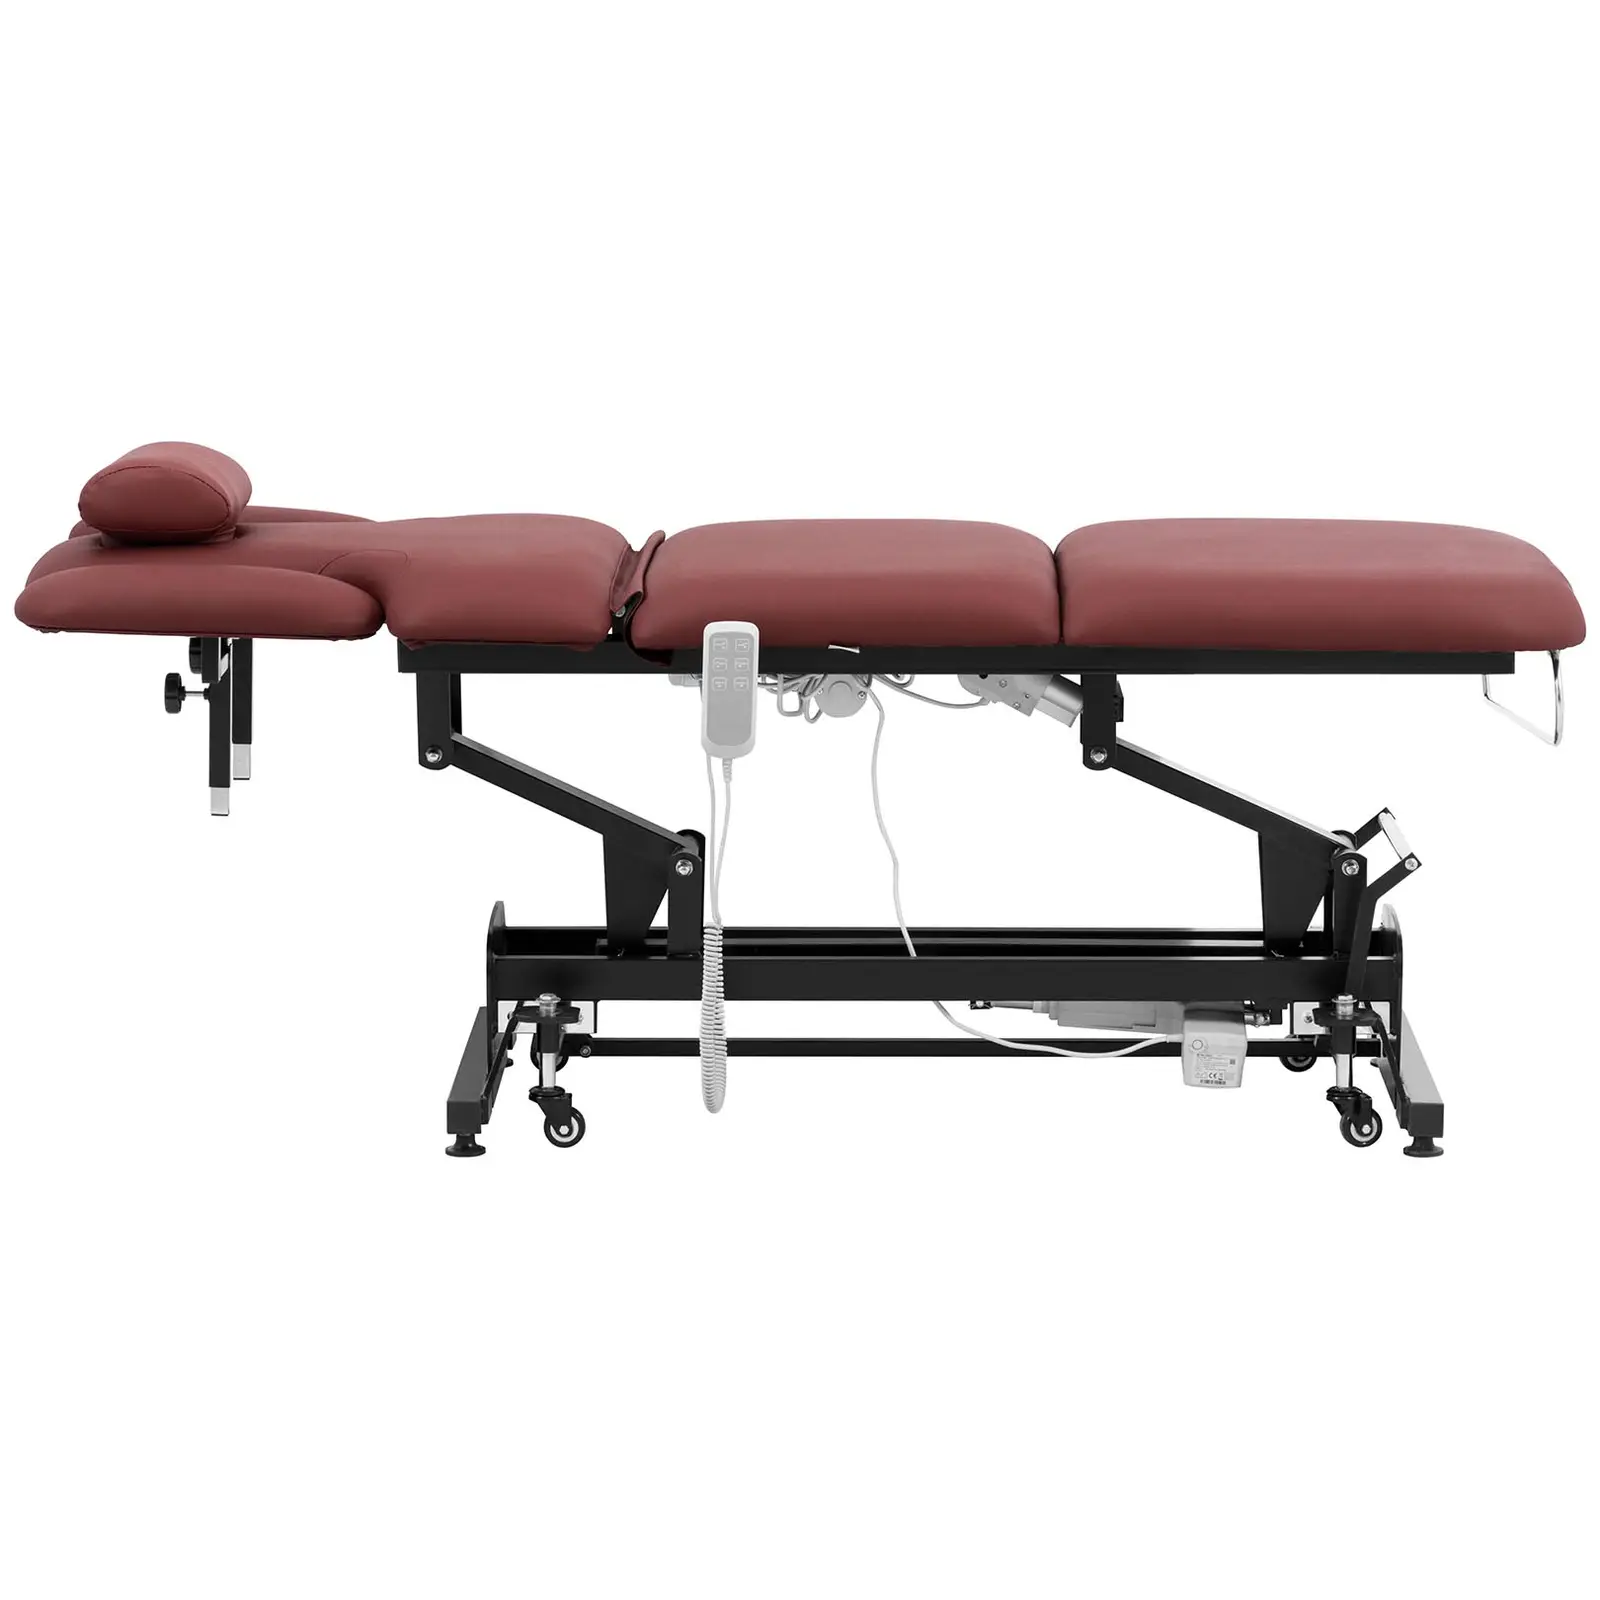 Lettino massaggio elettrico - 3 motori - 250 kg - nero/bordeaux